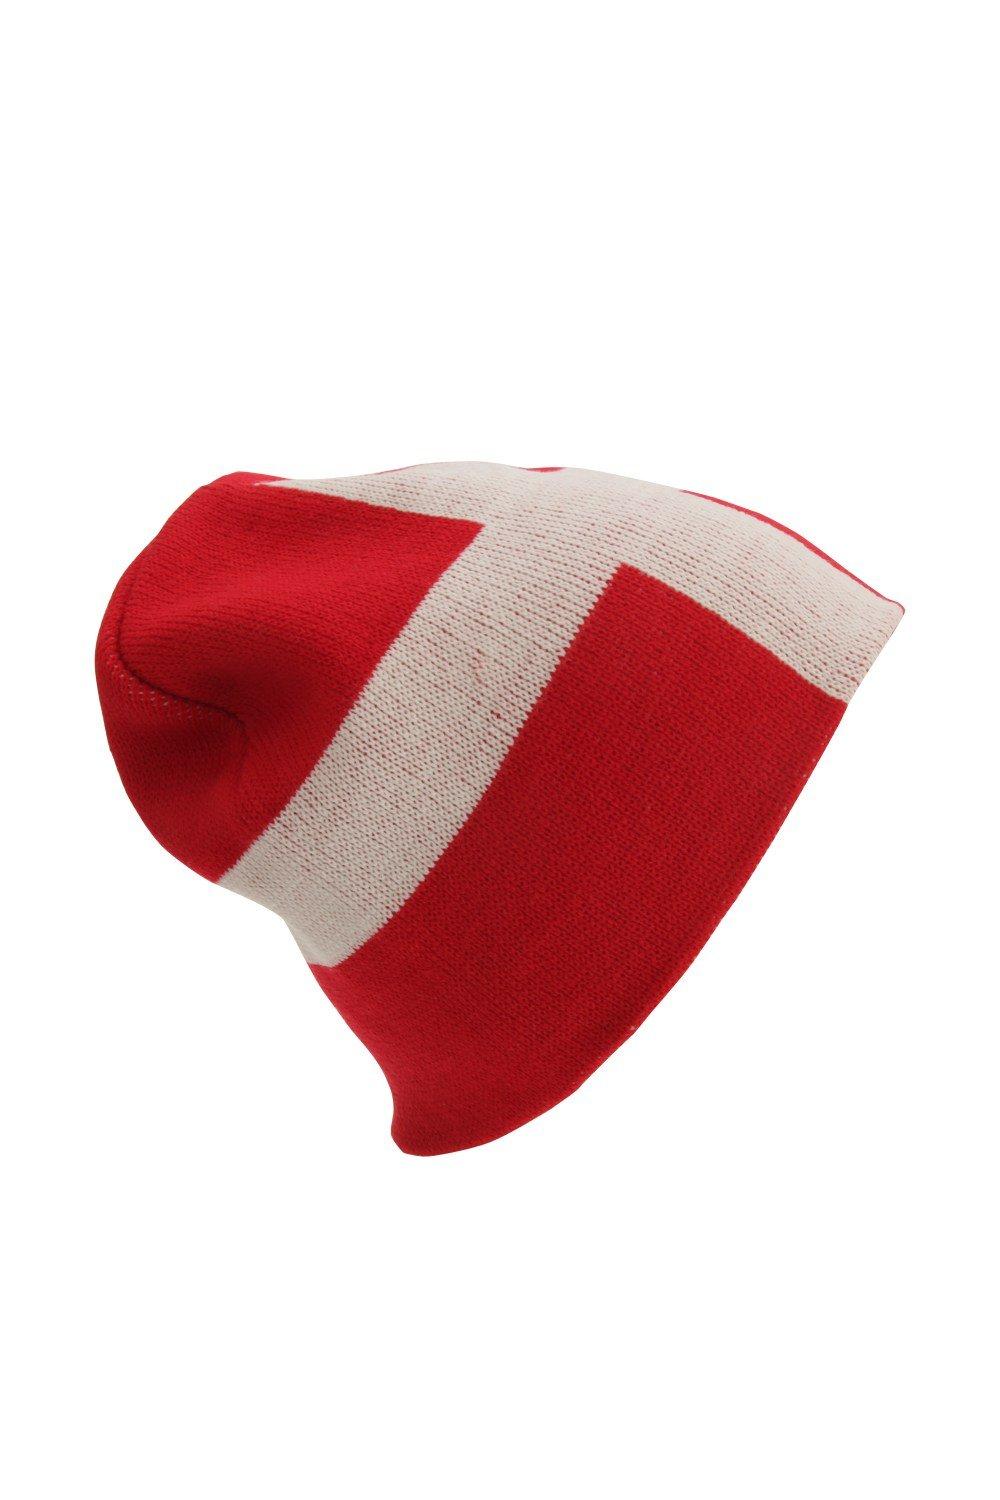 Зимняя шапка с флагом Дании Universal Textiles, красный